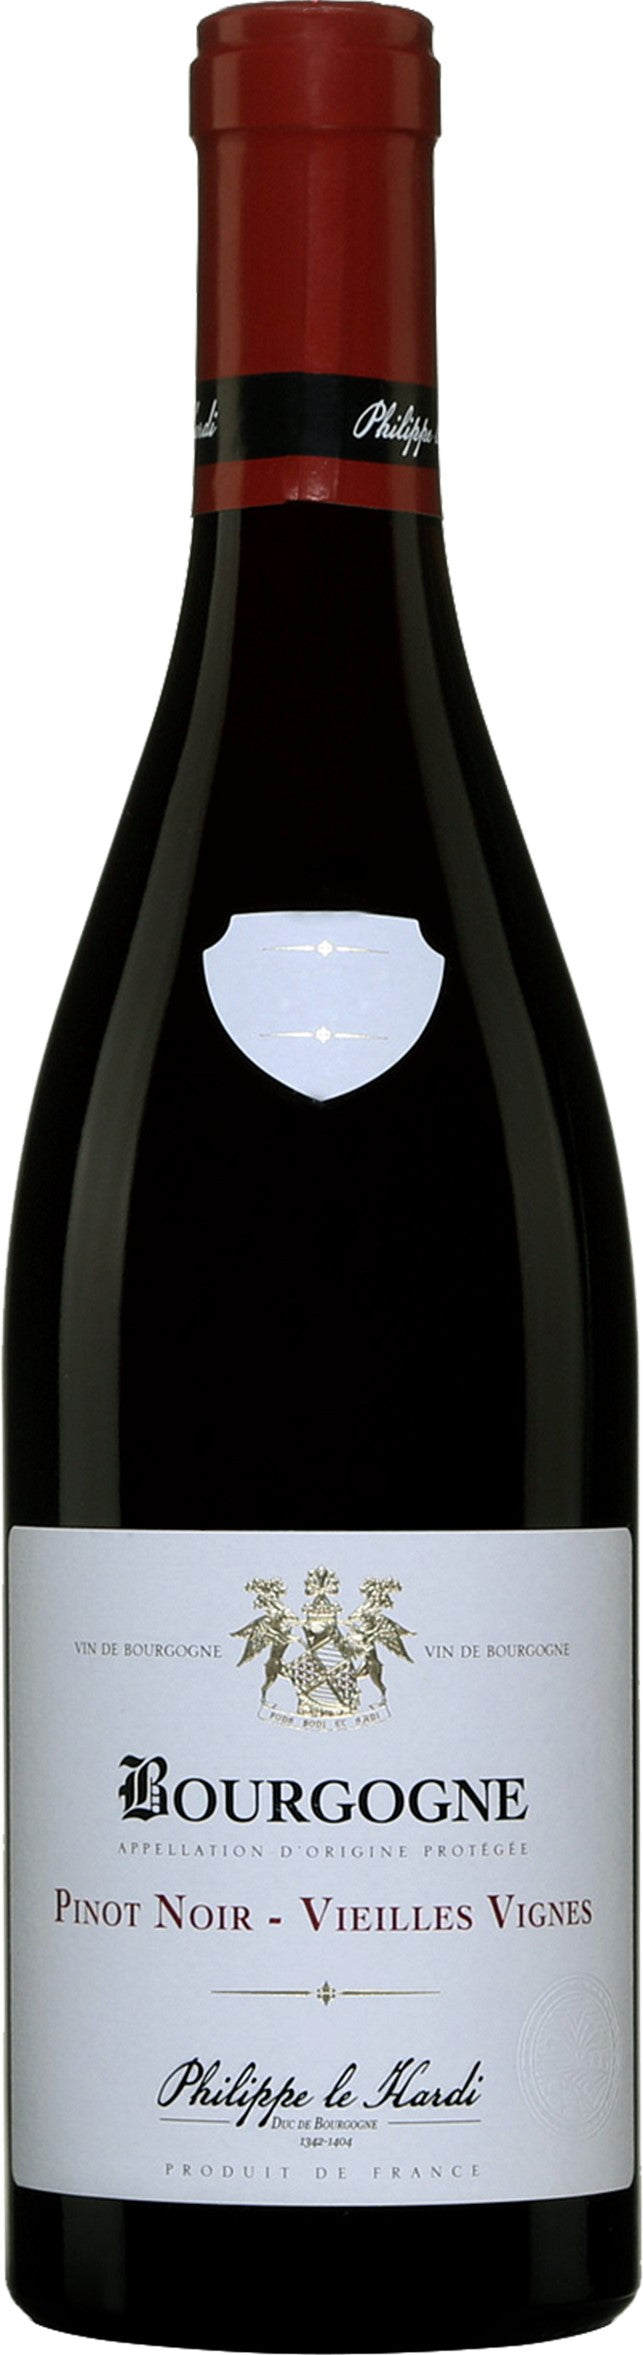 Philippe le Hardi - Pinot Noir - Vieilles Vignes